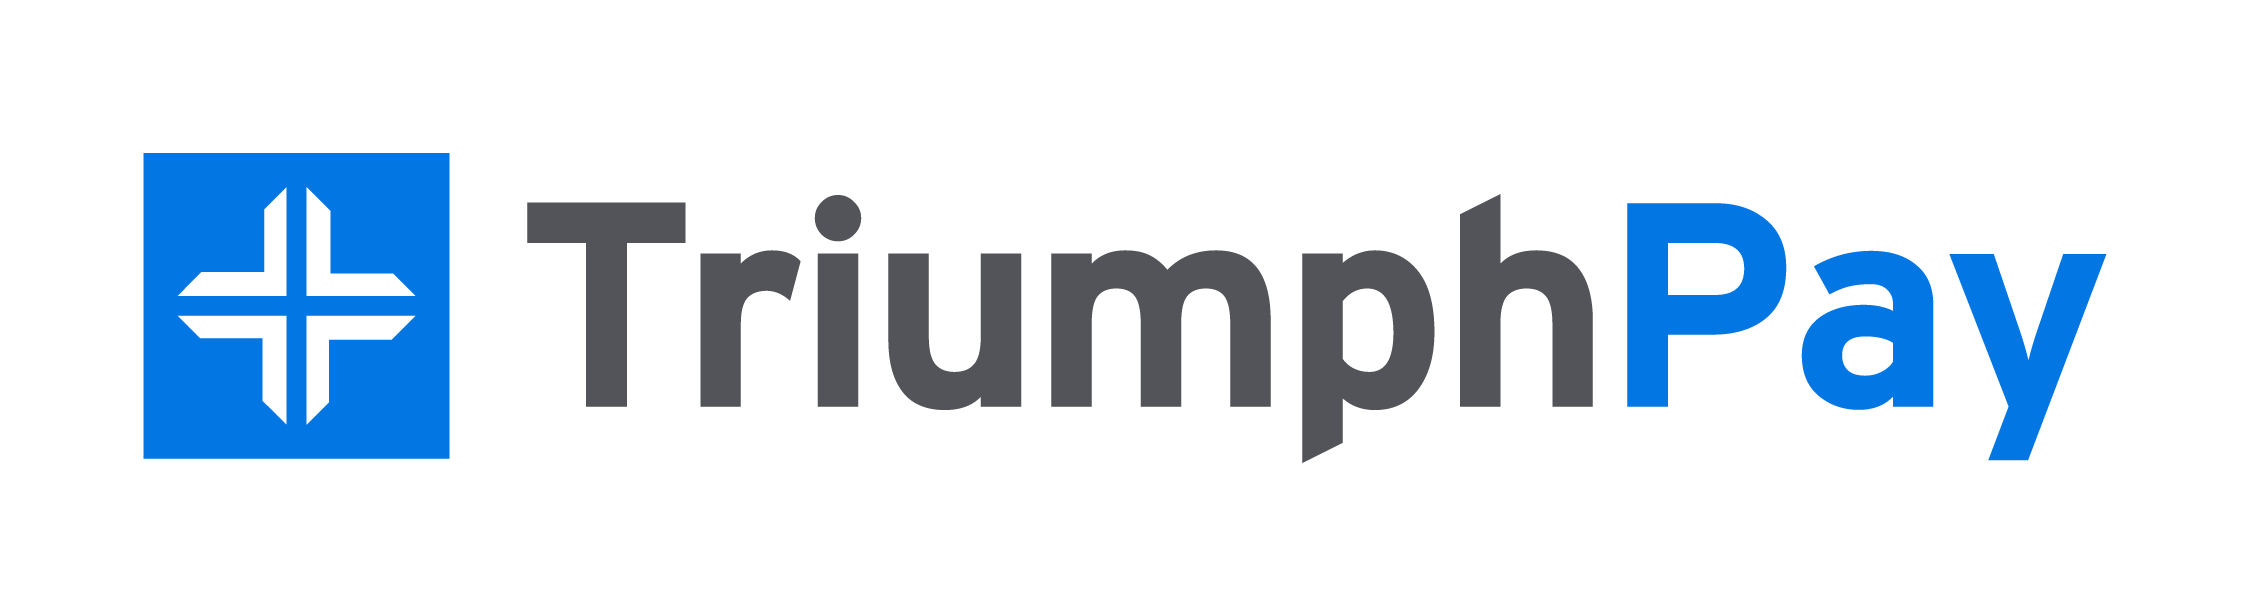 TriumphPay_Logo_FullColor